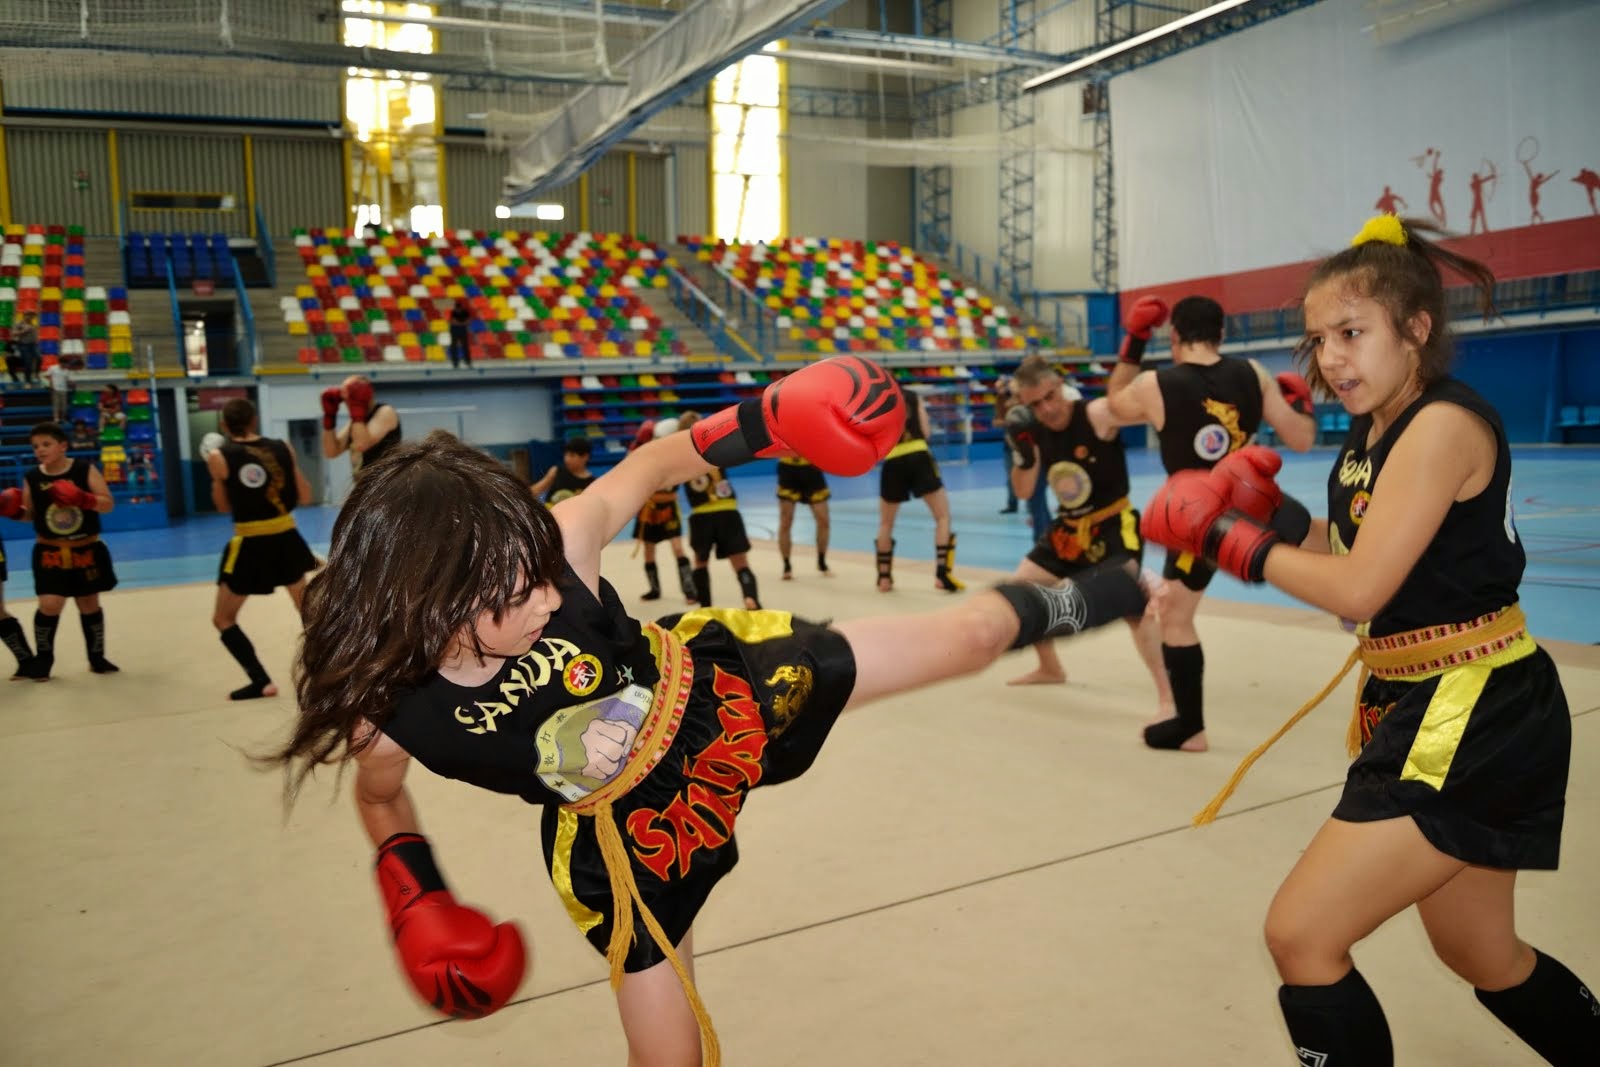 Infantil Sanda - Kid  Chinese Boxing Childrens